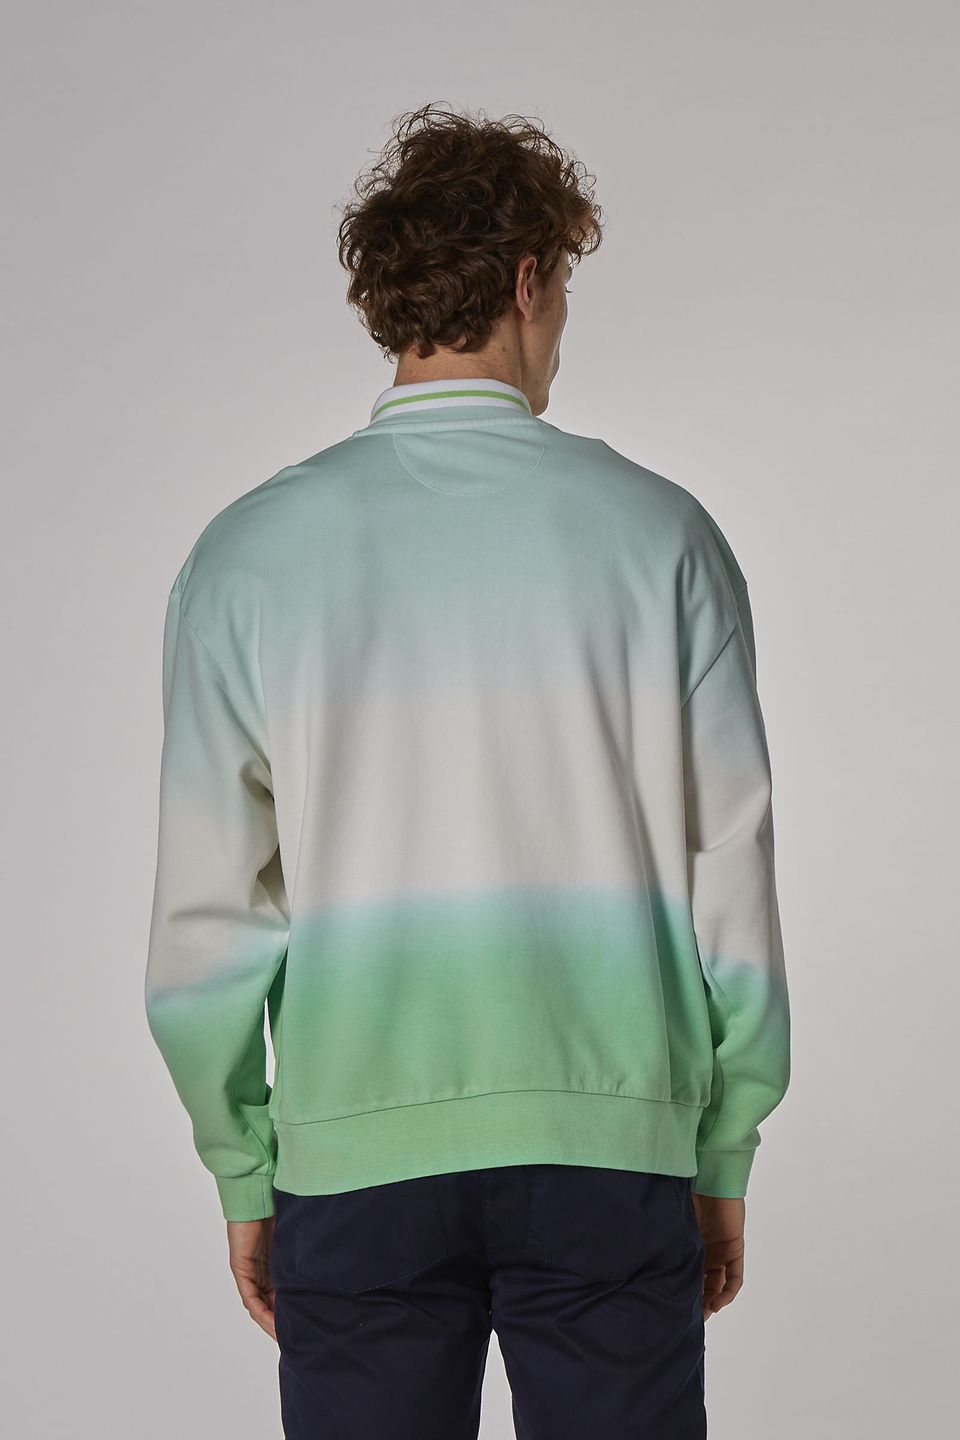 Herren-Sweatshirt aus 100 % Baumwolle mit Rundhalsausschnitt, oversized Modell - La Martina - Official Online Shop